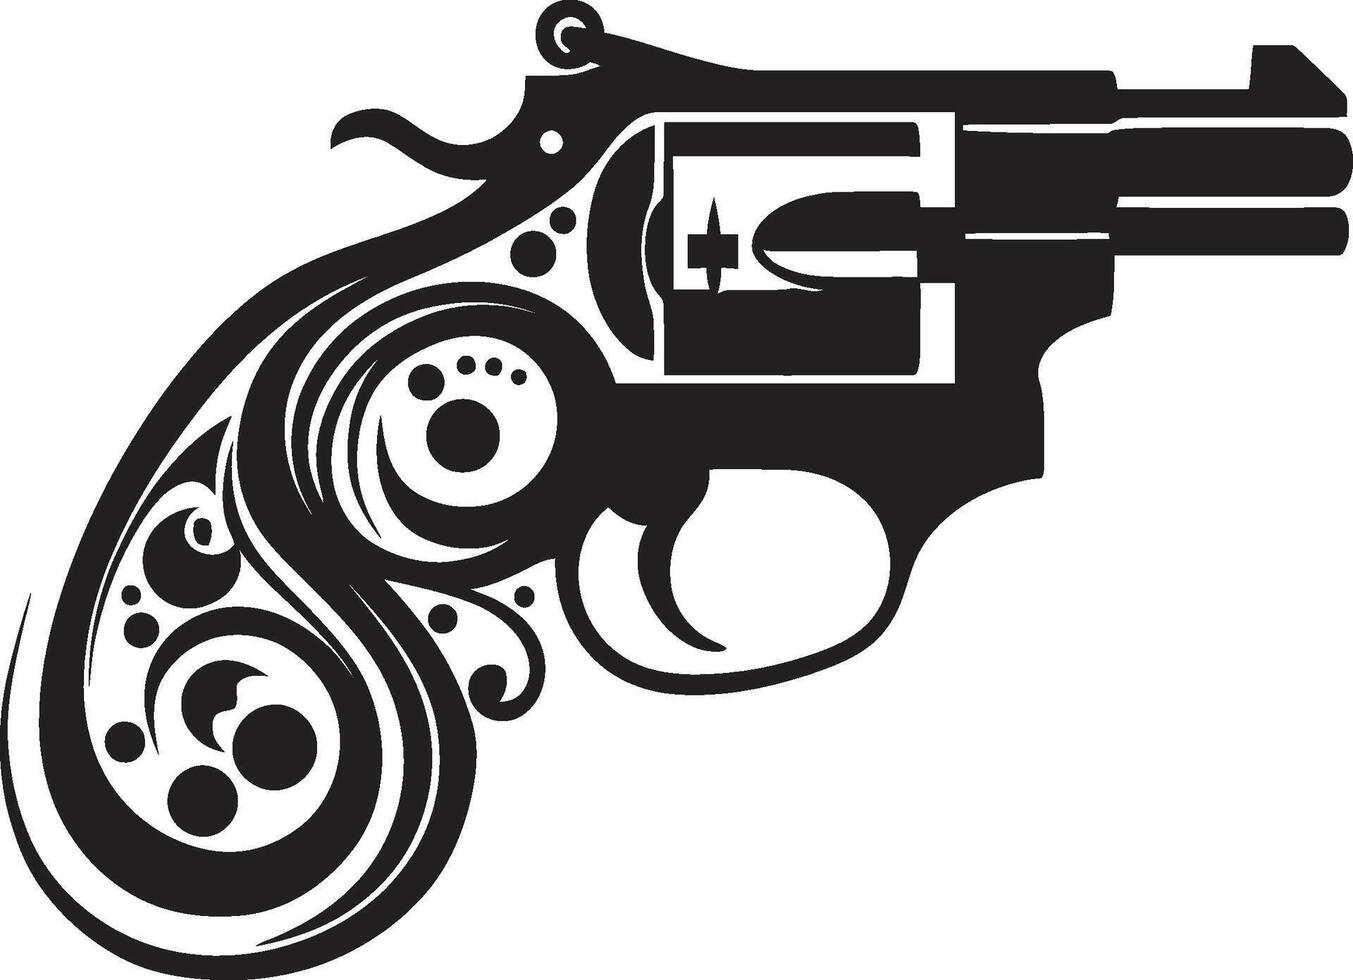 baril beauté insigne élégant revolver logo avec énervé élégance tactique tendance crête avant-gardiste revolver icône dans moderne conception vecteur